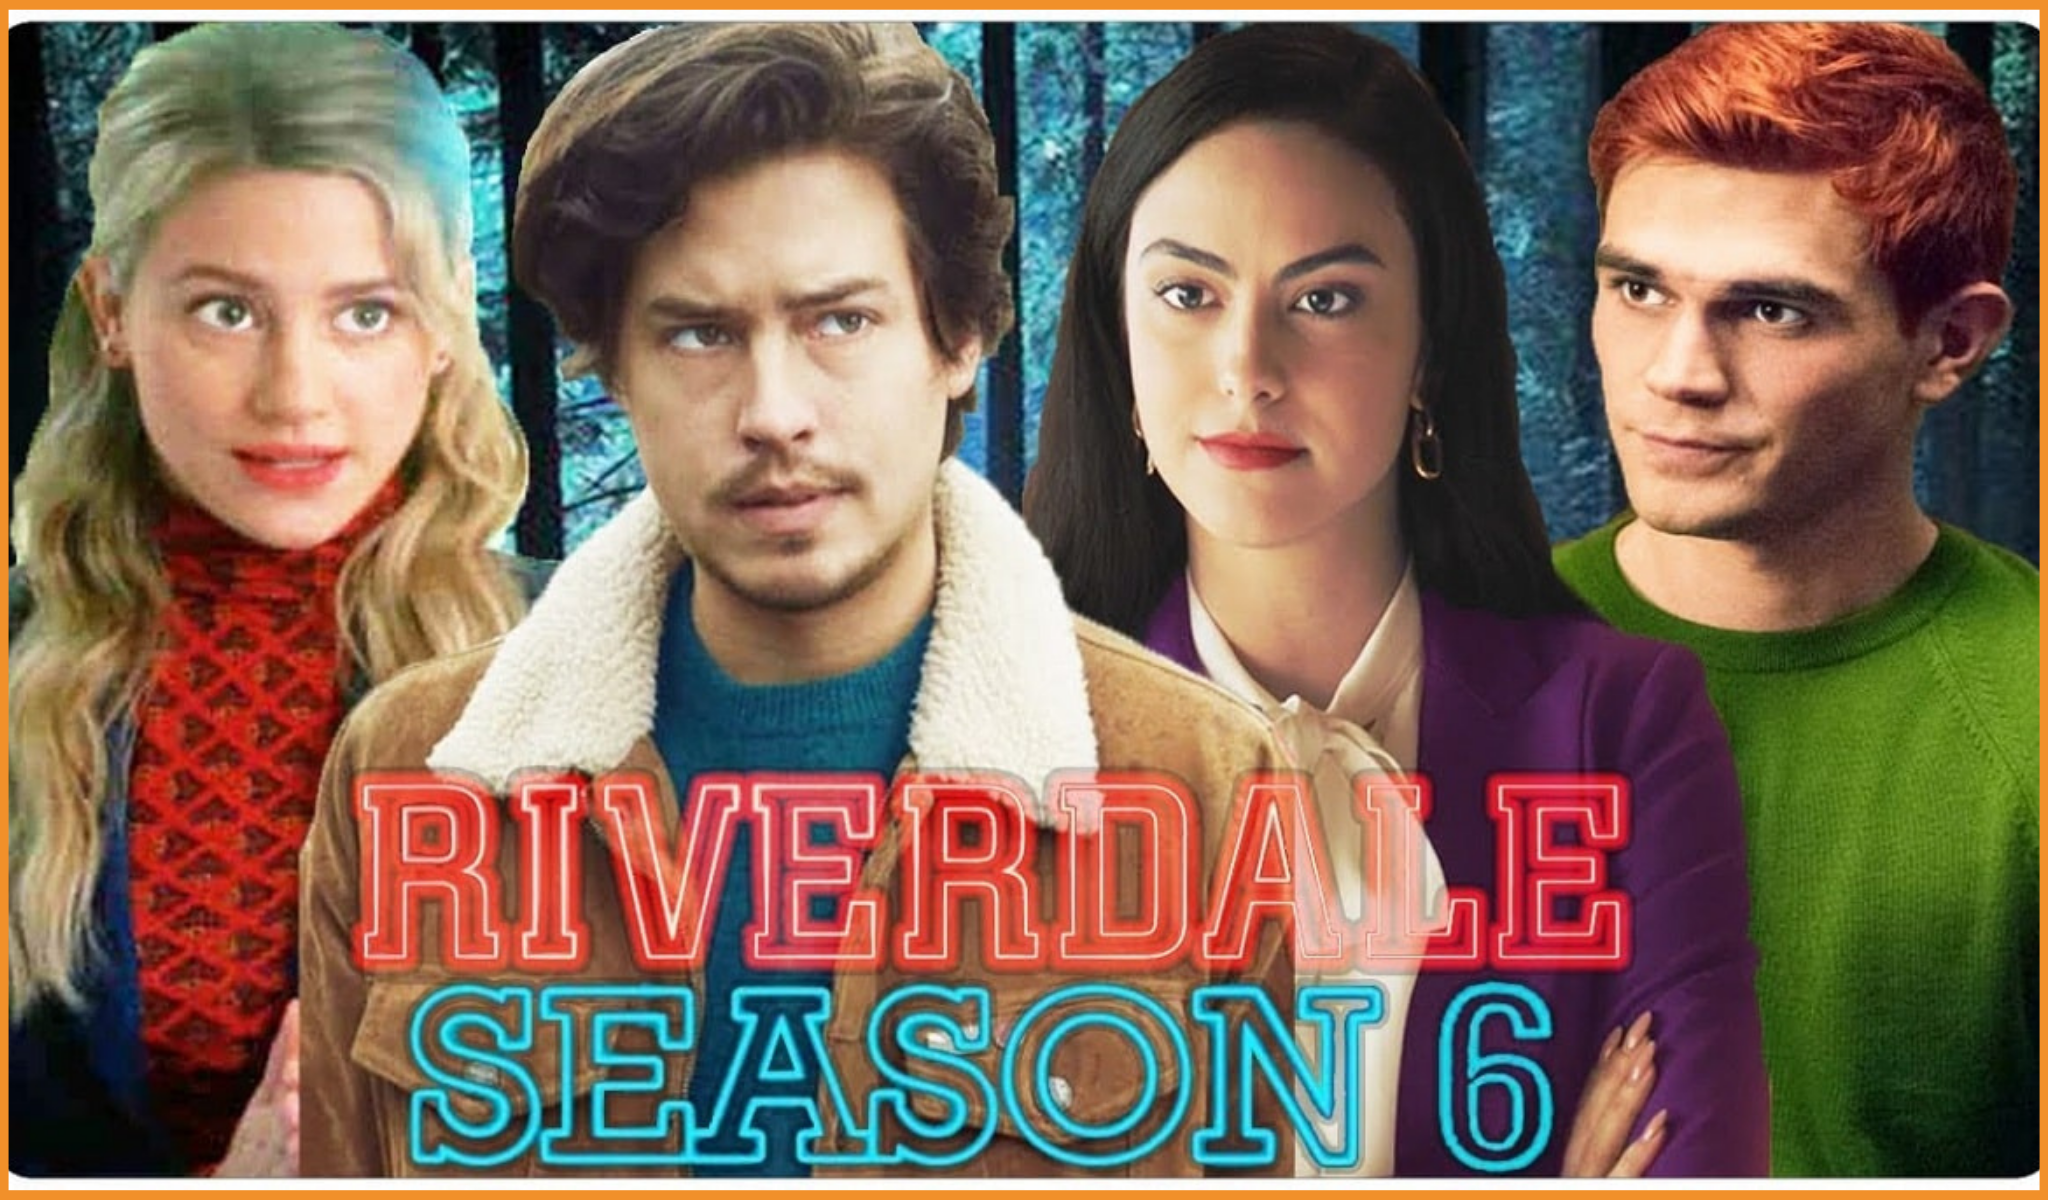 Riverdale season 5 recap